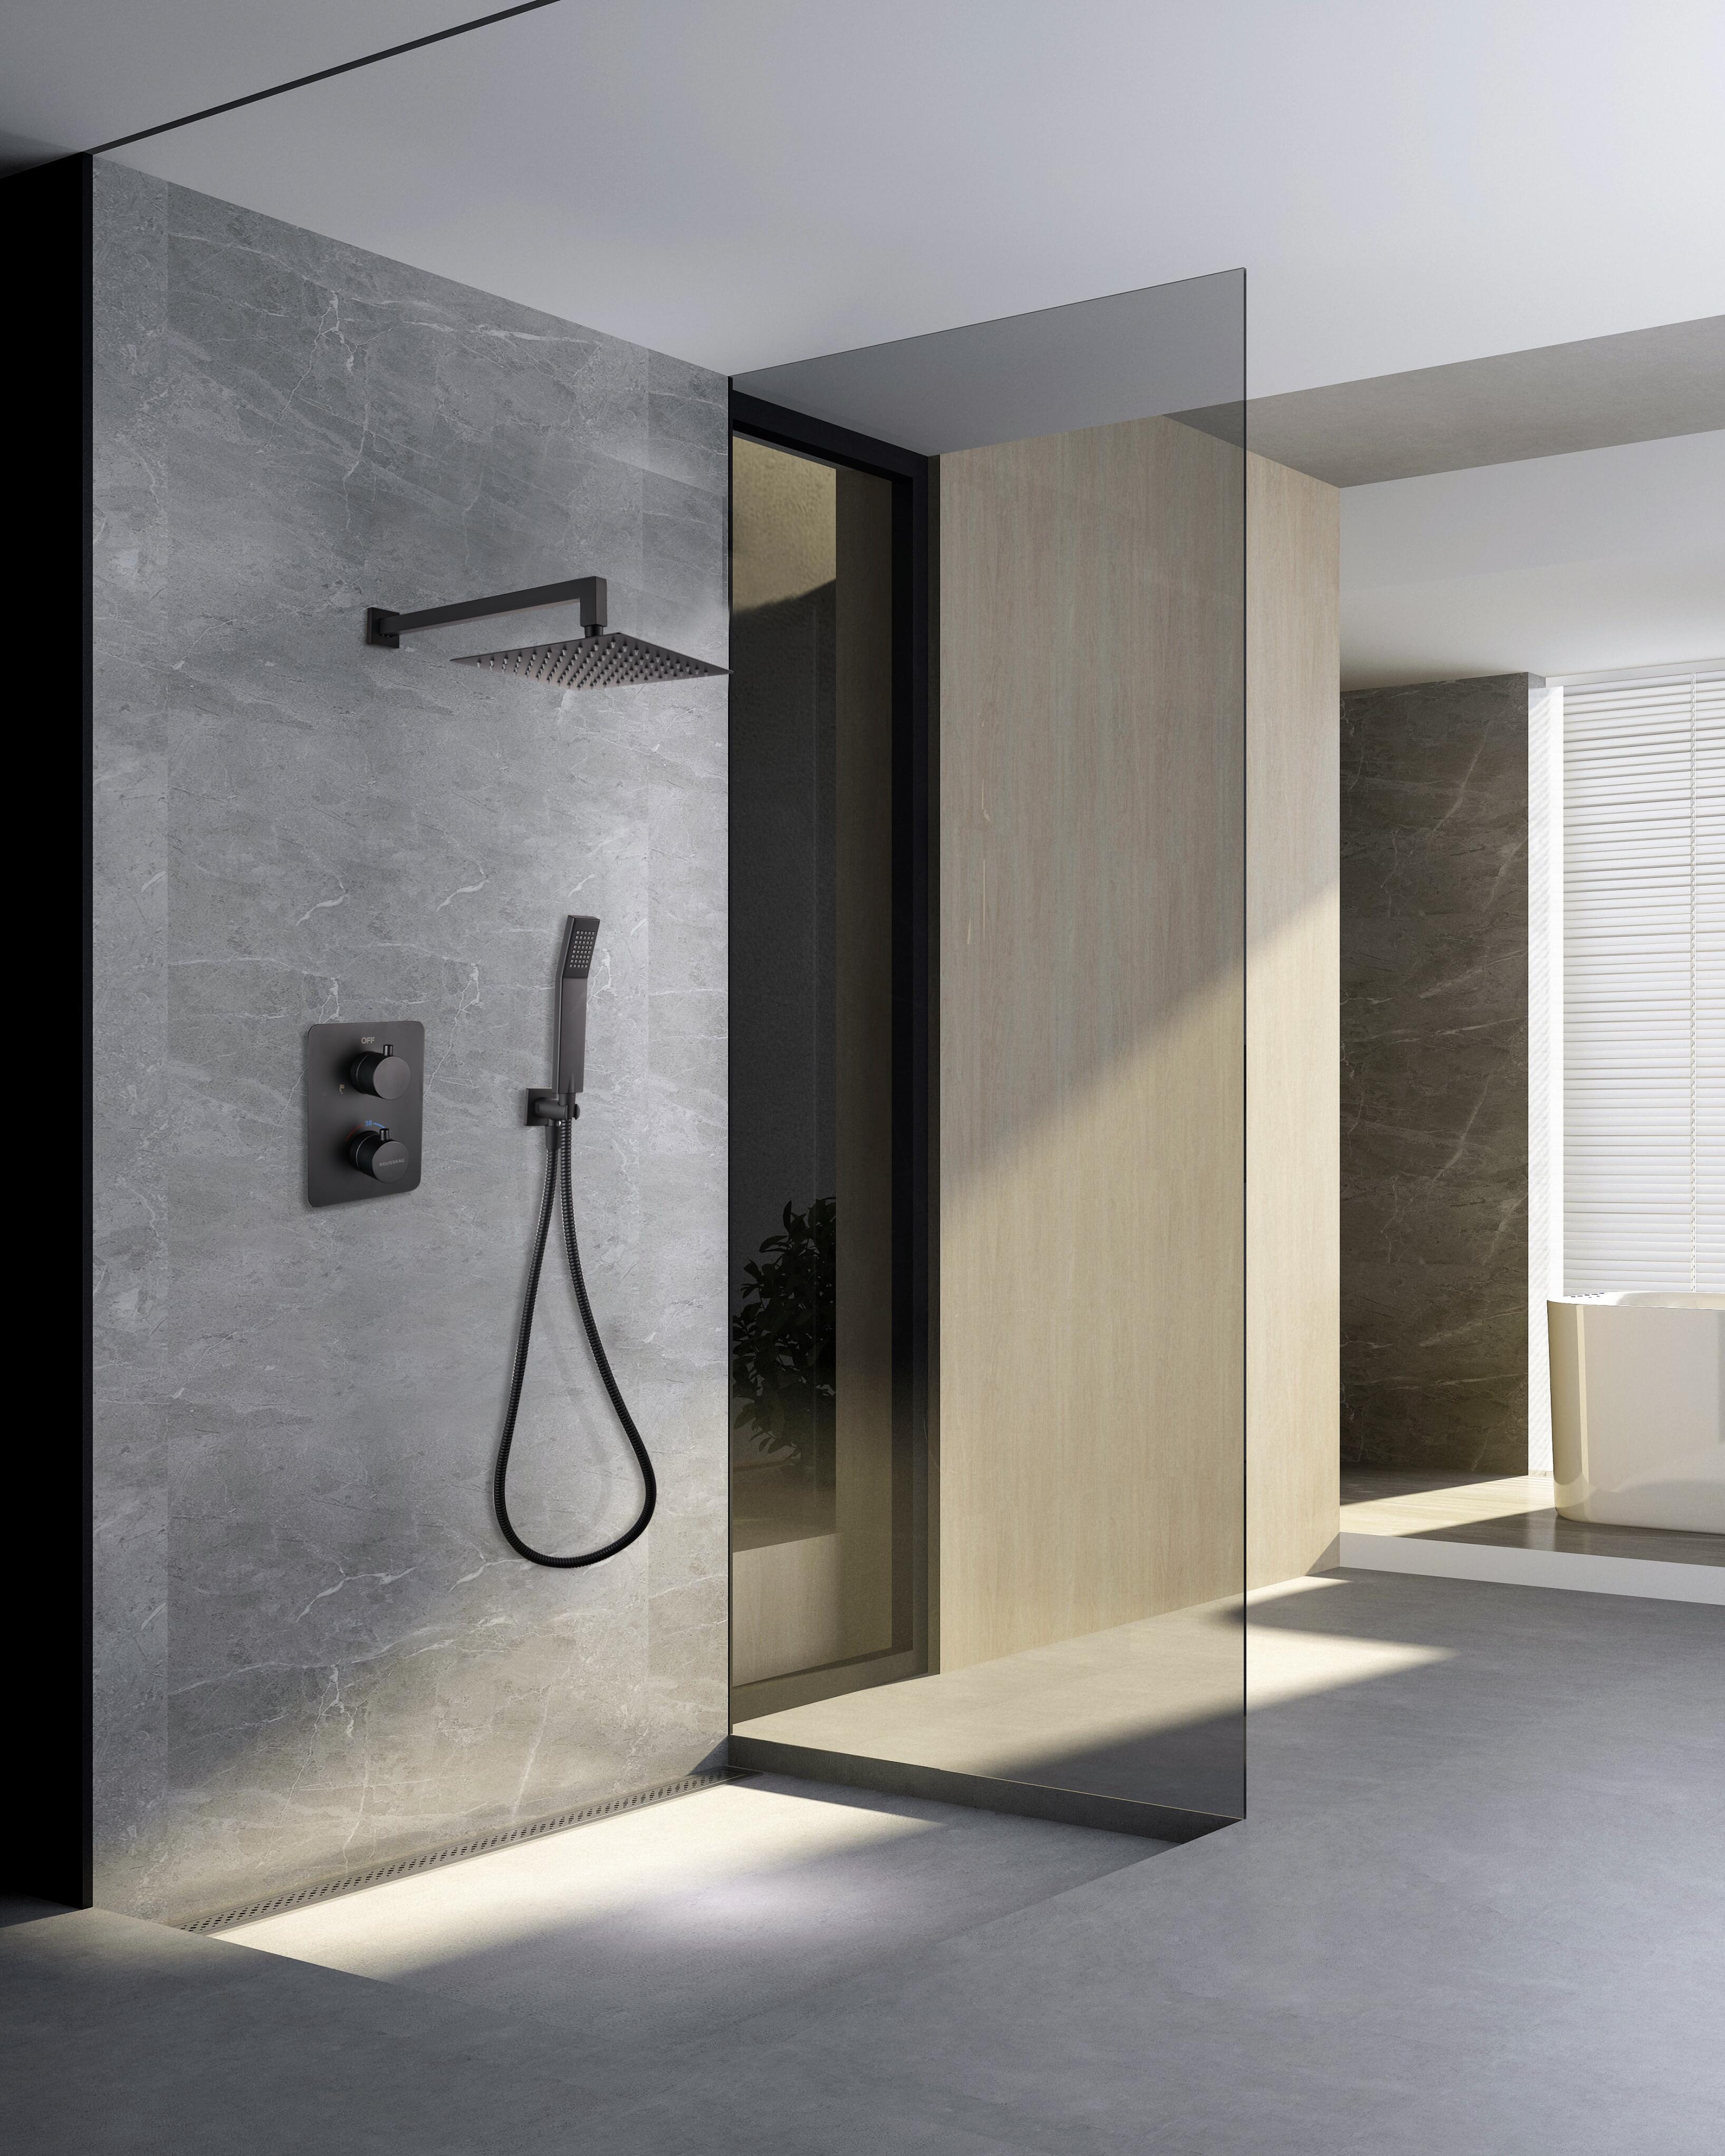 Comprar Conjunto de ducha empotrada pared redonda online